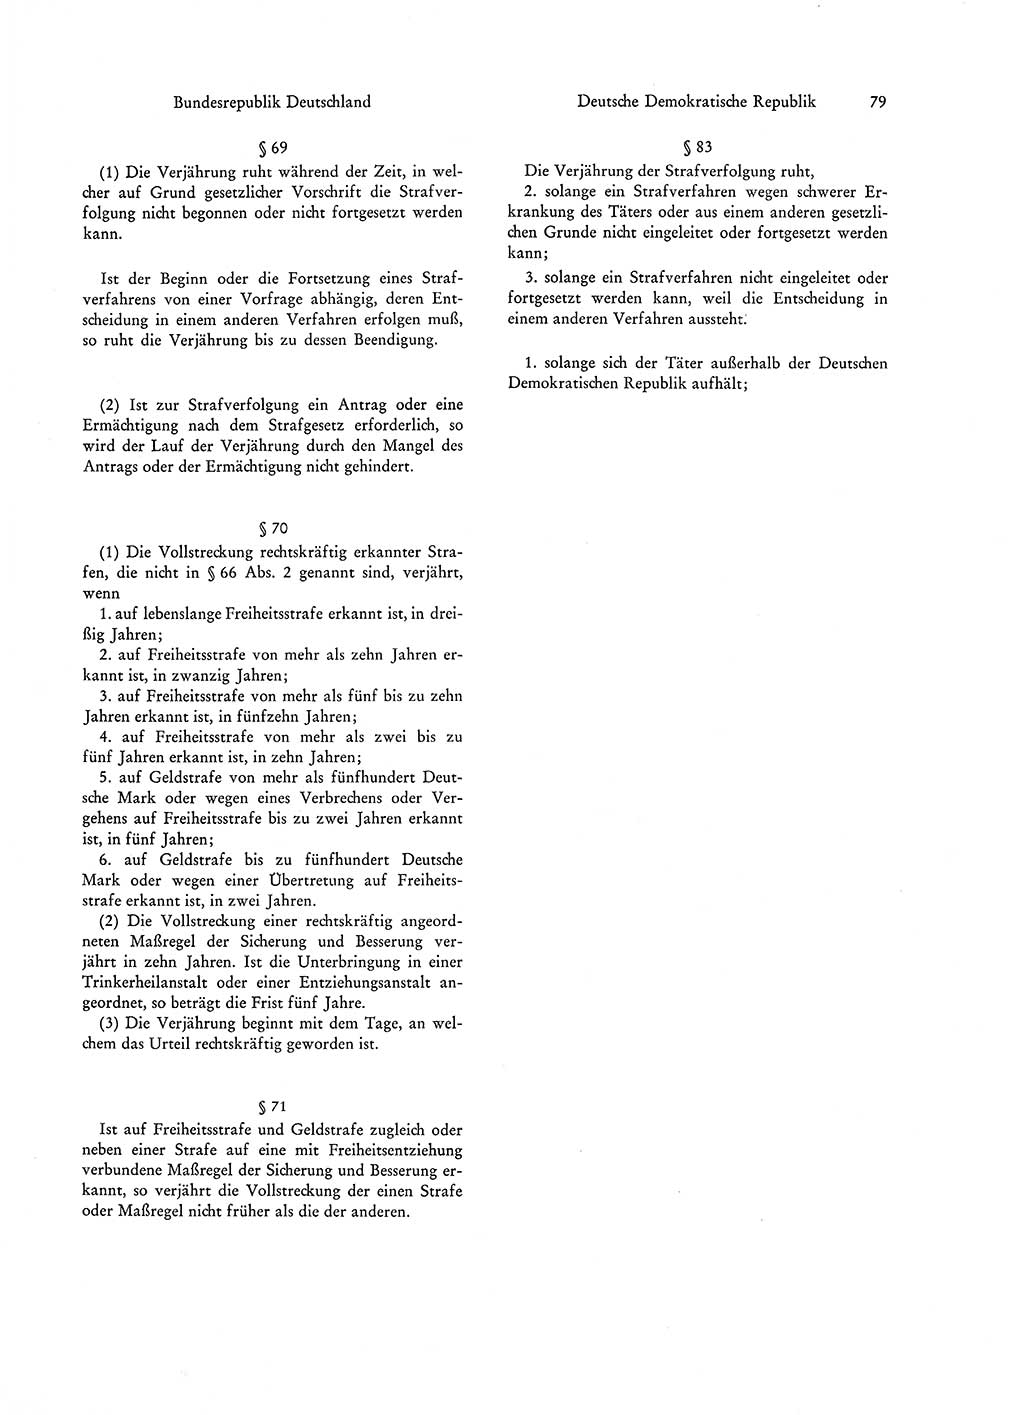 Strafgesetzgebung in Deutschland [Bundesrepublik Deutschland (BRD) und Deutsche Demokratische Republik (DDR)] 1972, Seite 79 (Str.-Ges. Dtl. StGB BRD DDR 1972, S. 79)